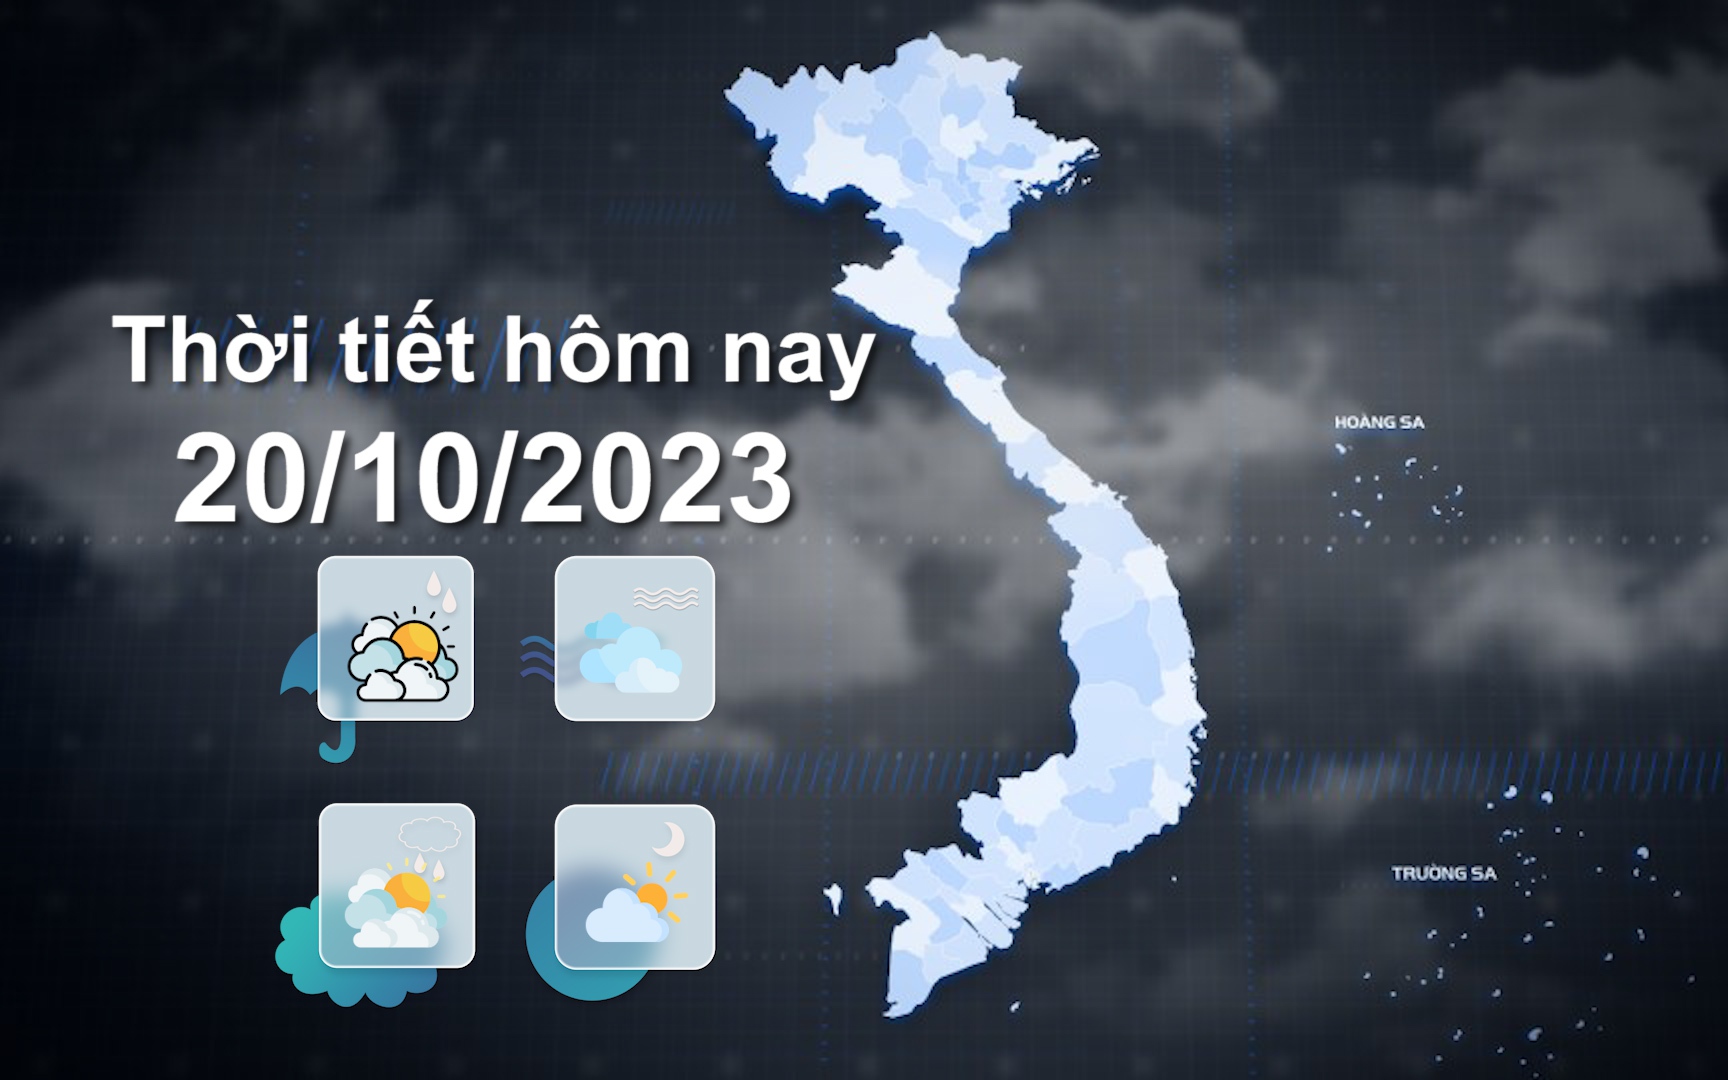 Thời tiết hôm nay 20/10/2023: Nhiều nơi miền Bắc có mưa, mưa vừa, có nơi mưa to đến rất to